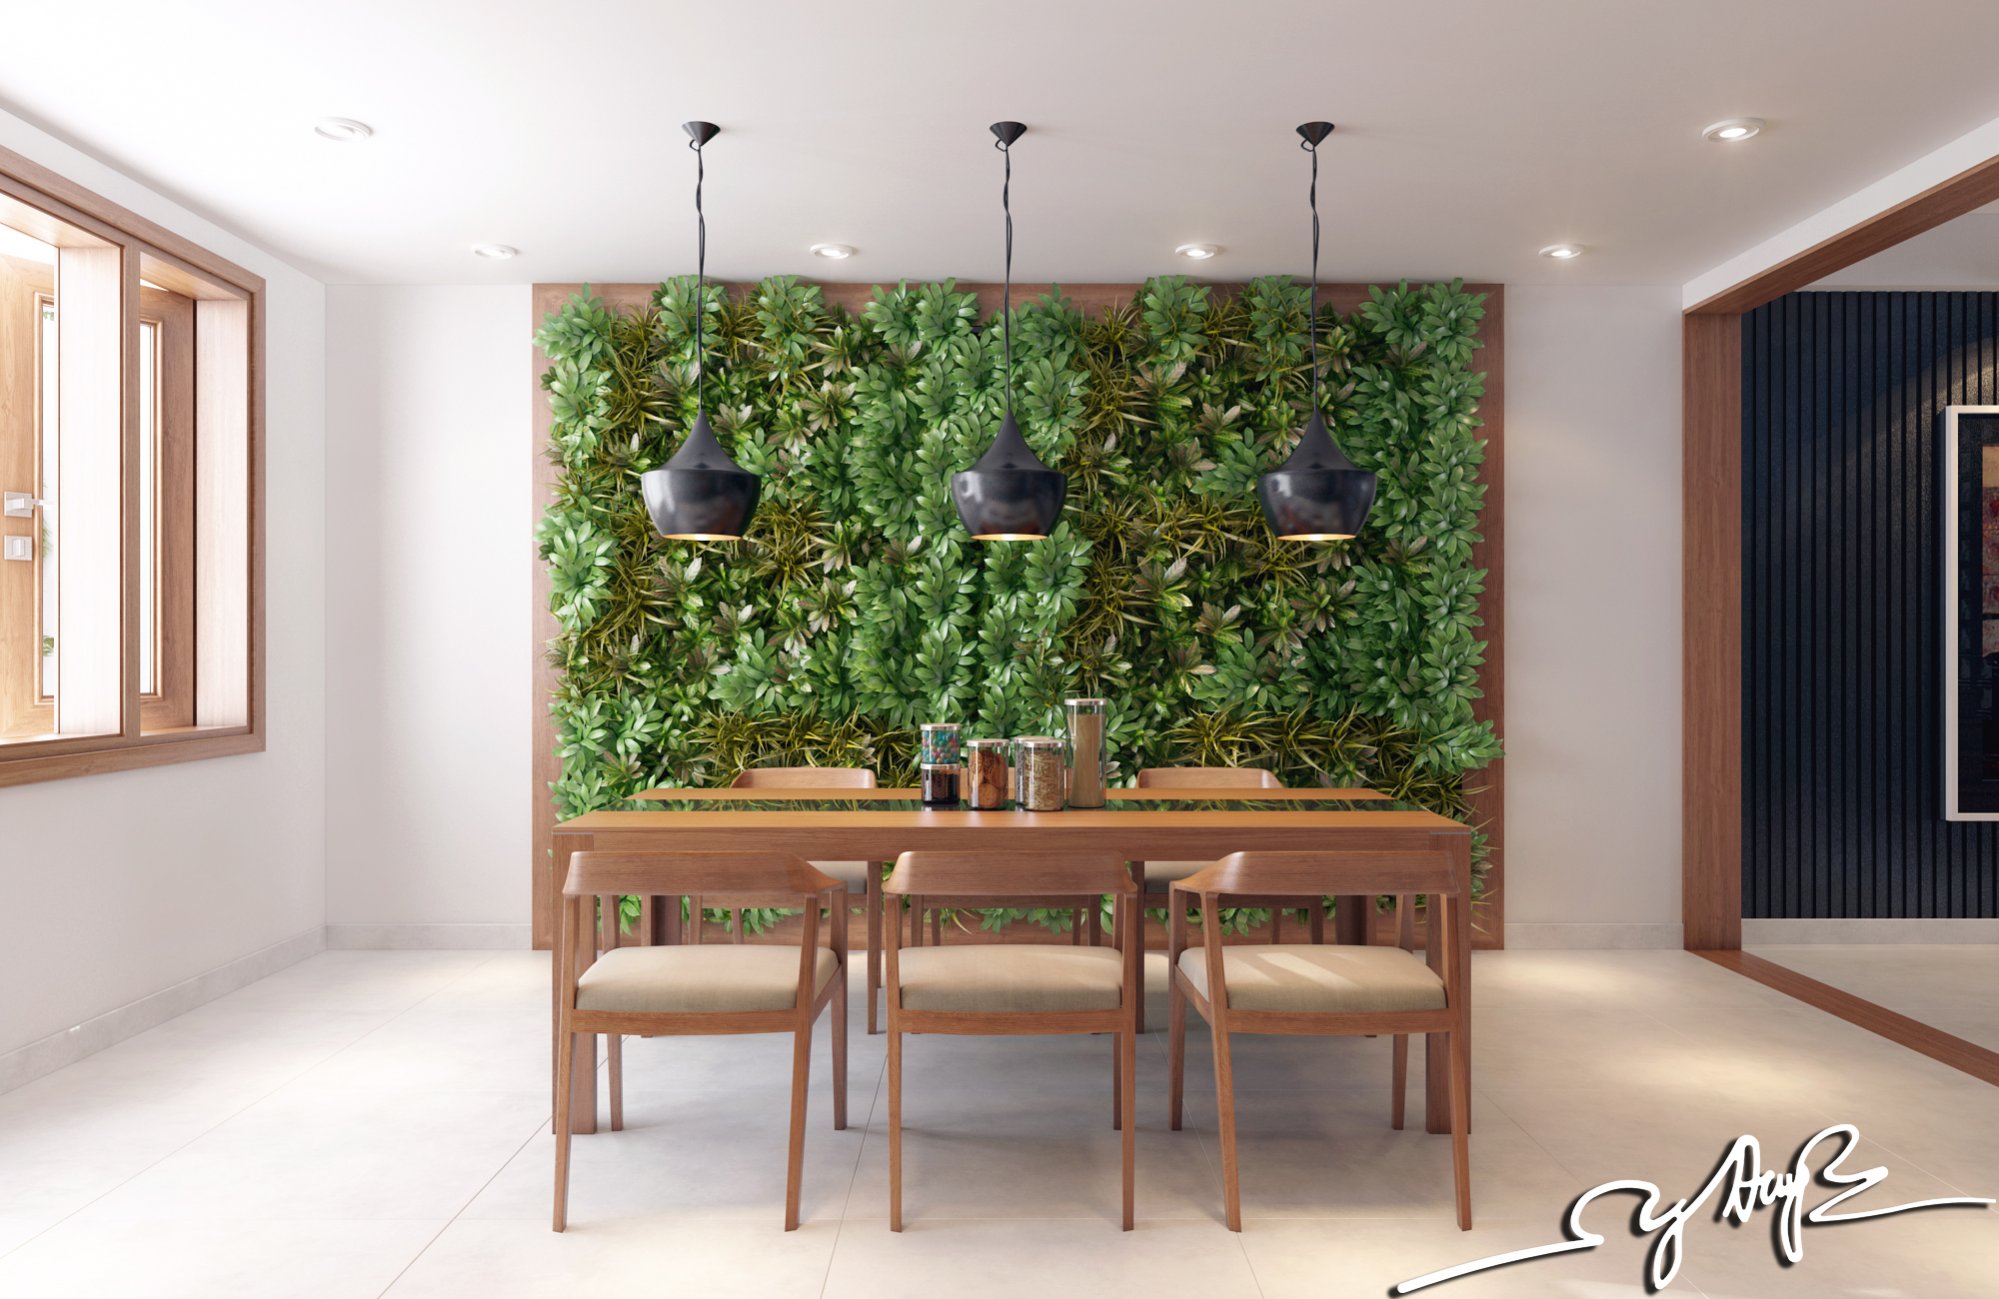 Garden wall interior design ideas